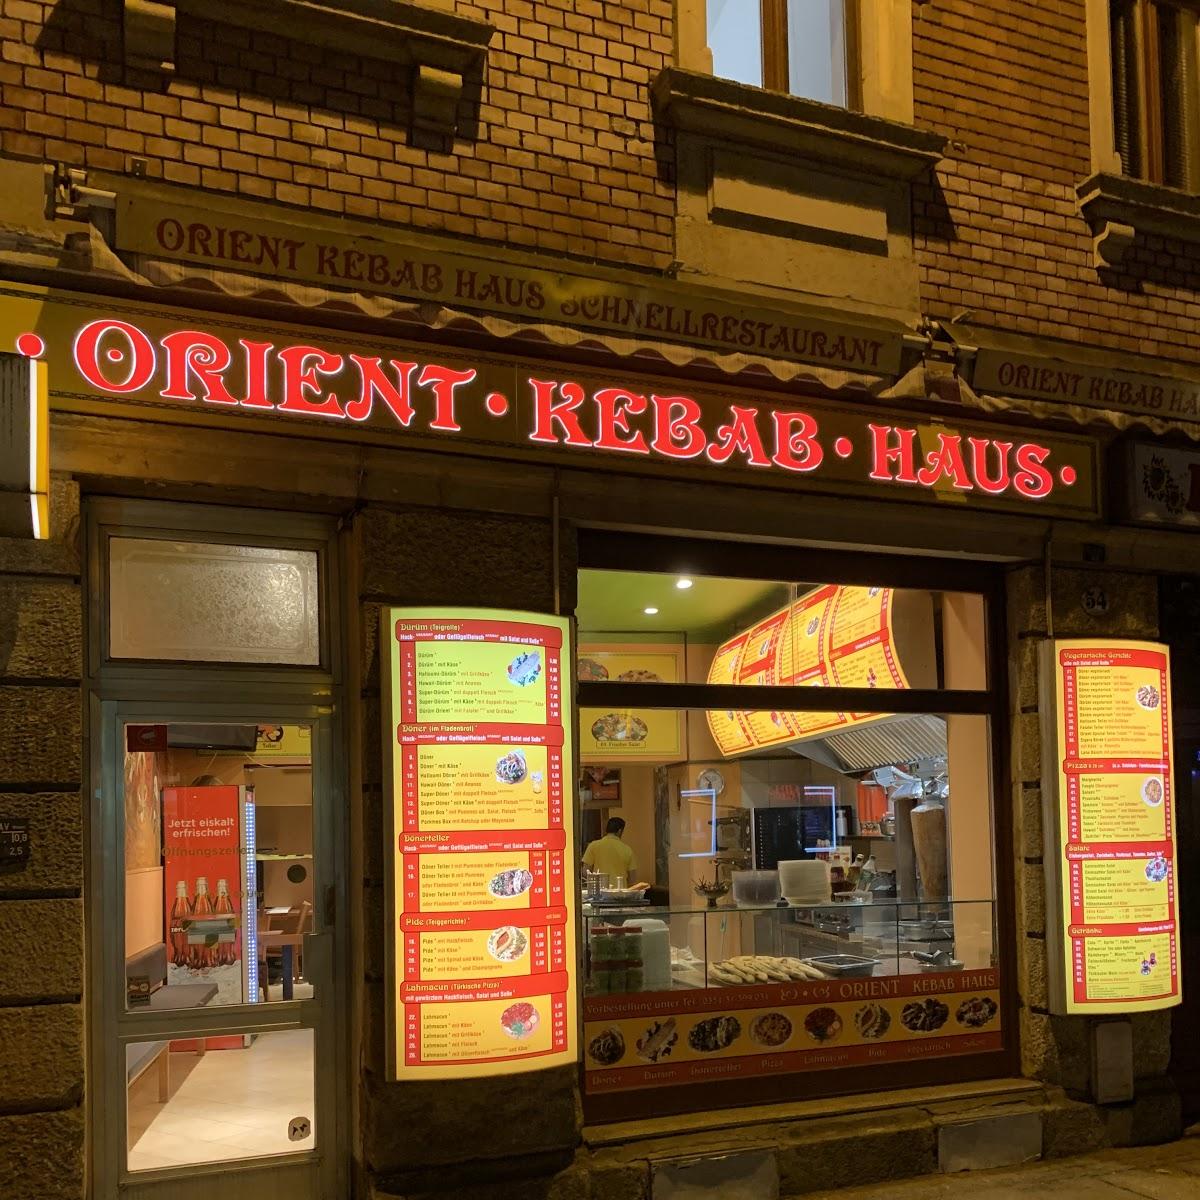 Restaurant "Orient Kebab Haus" in Dresden